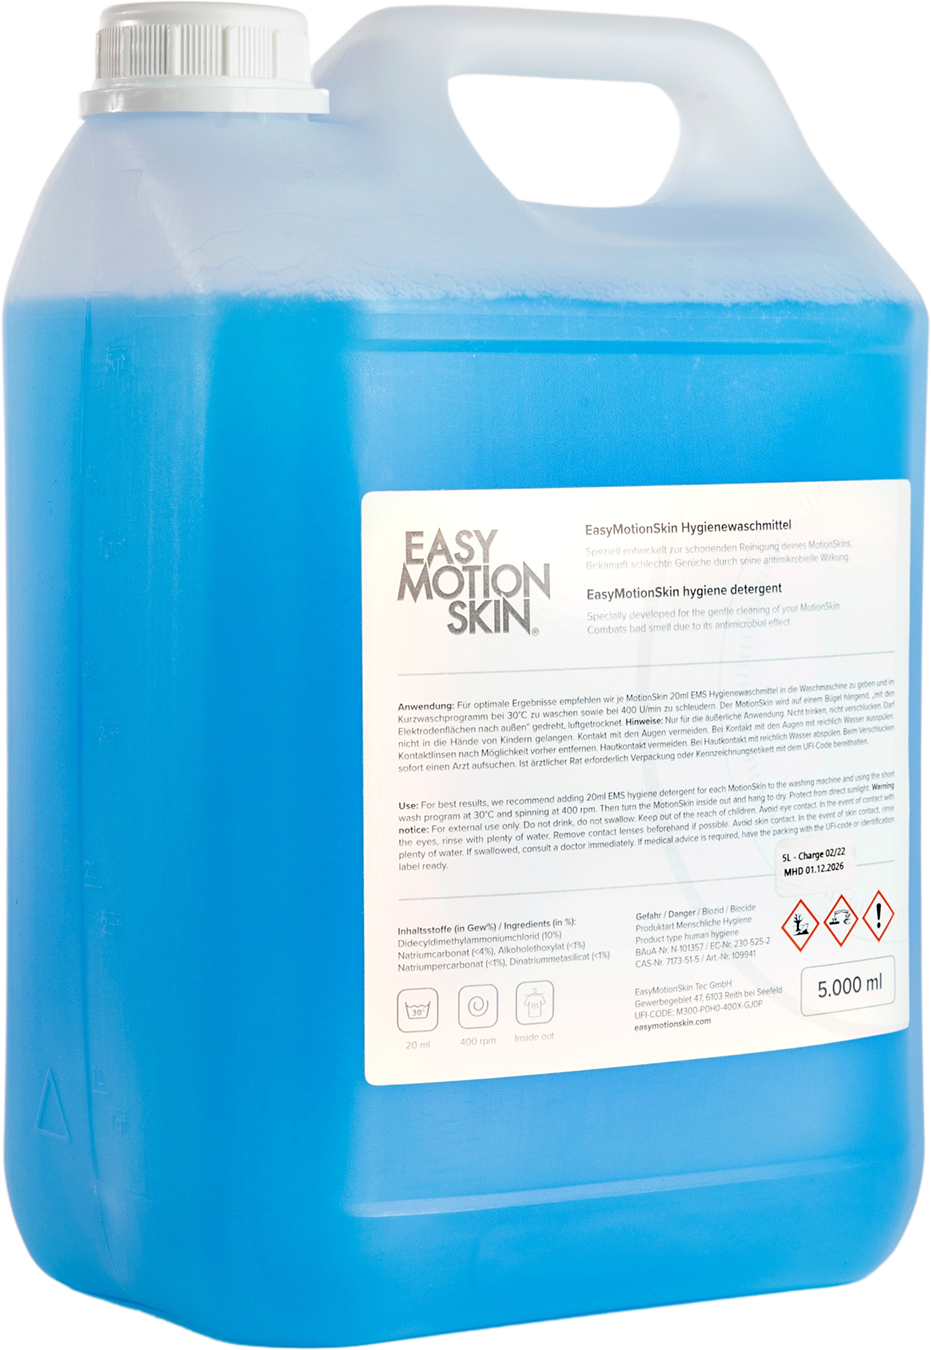 EASYMOTIONSKIN Hygienewaschmittel (5000ML)